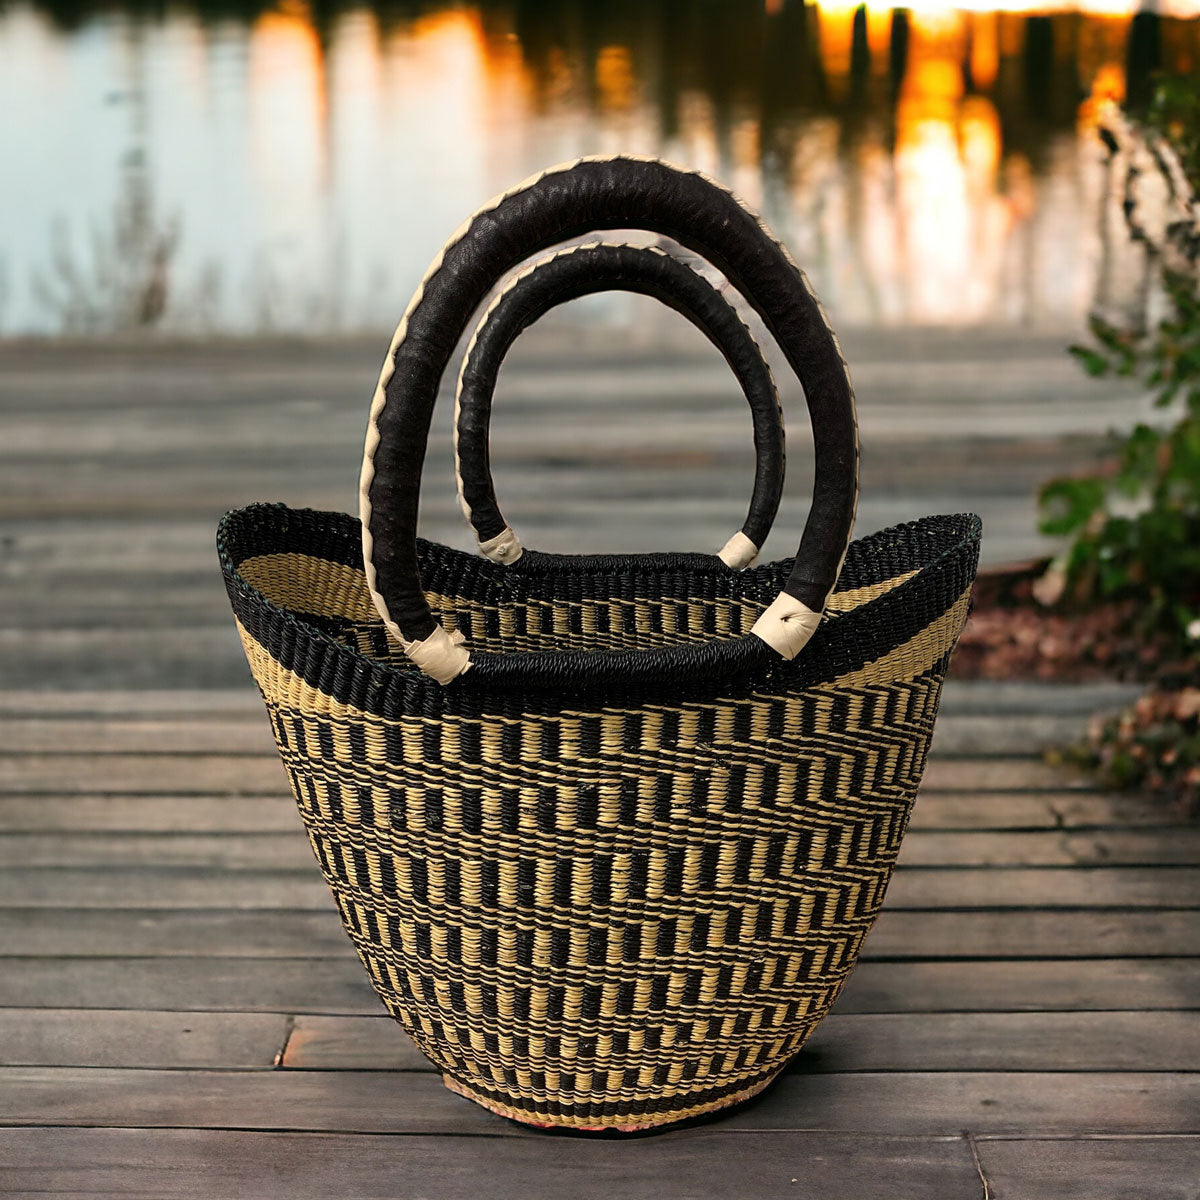 Black & Natural Patterned Market Basket